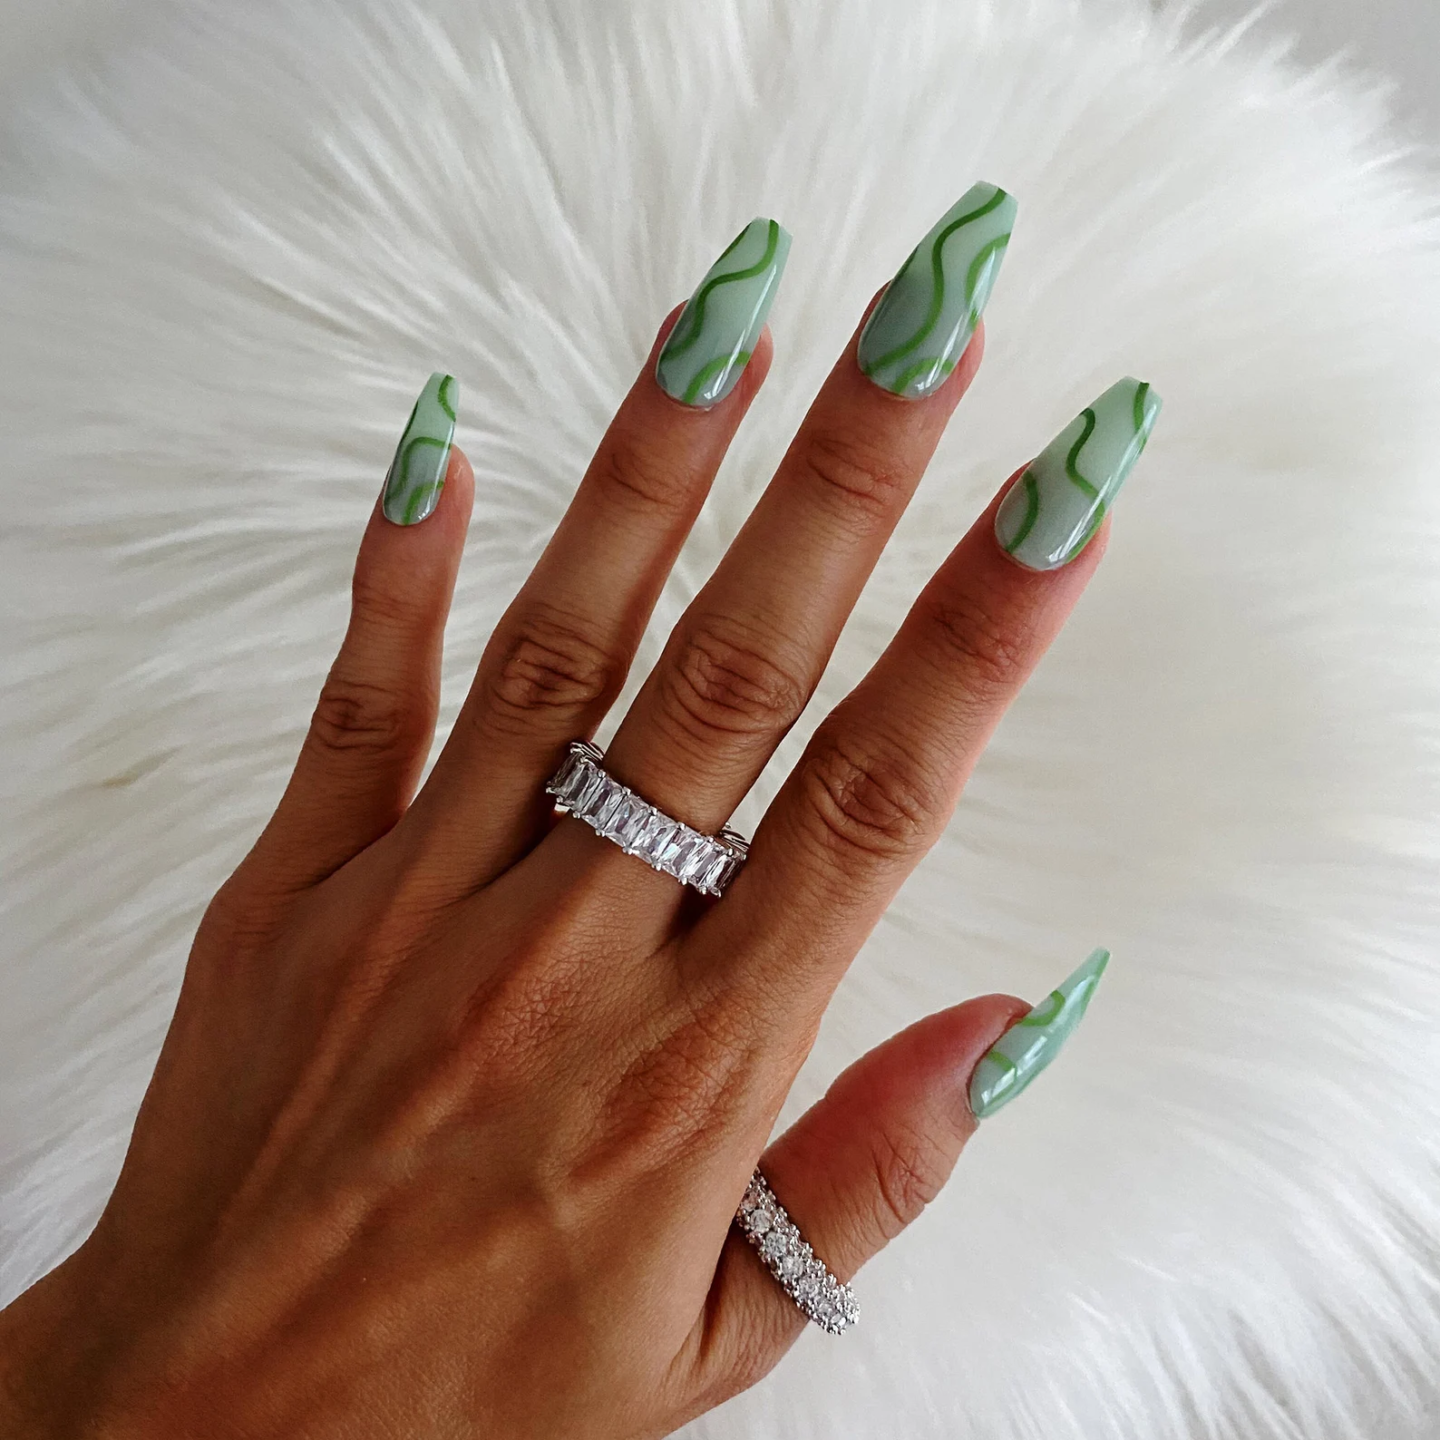 Green Swirl Nail Design